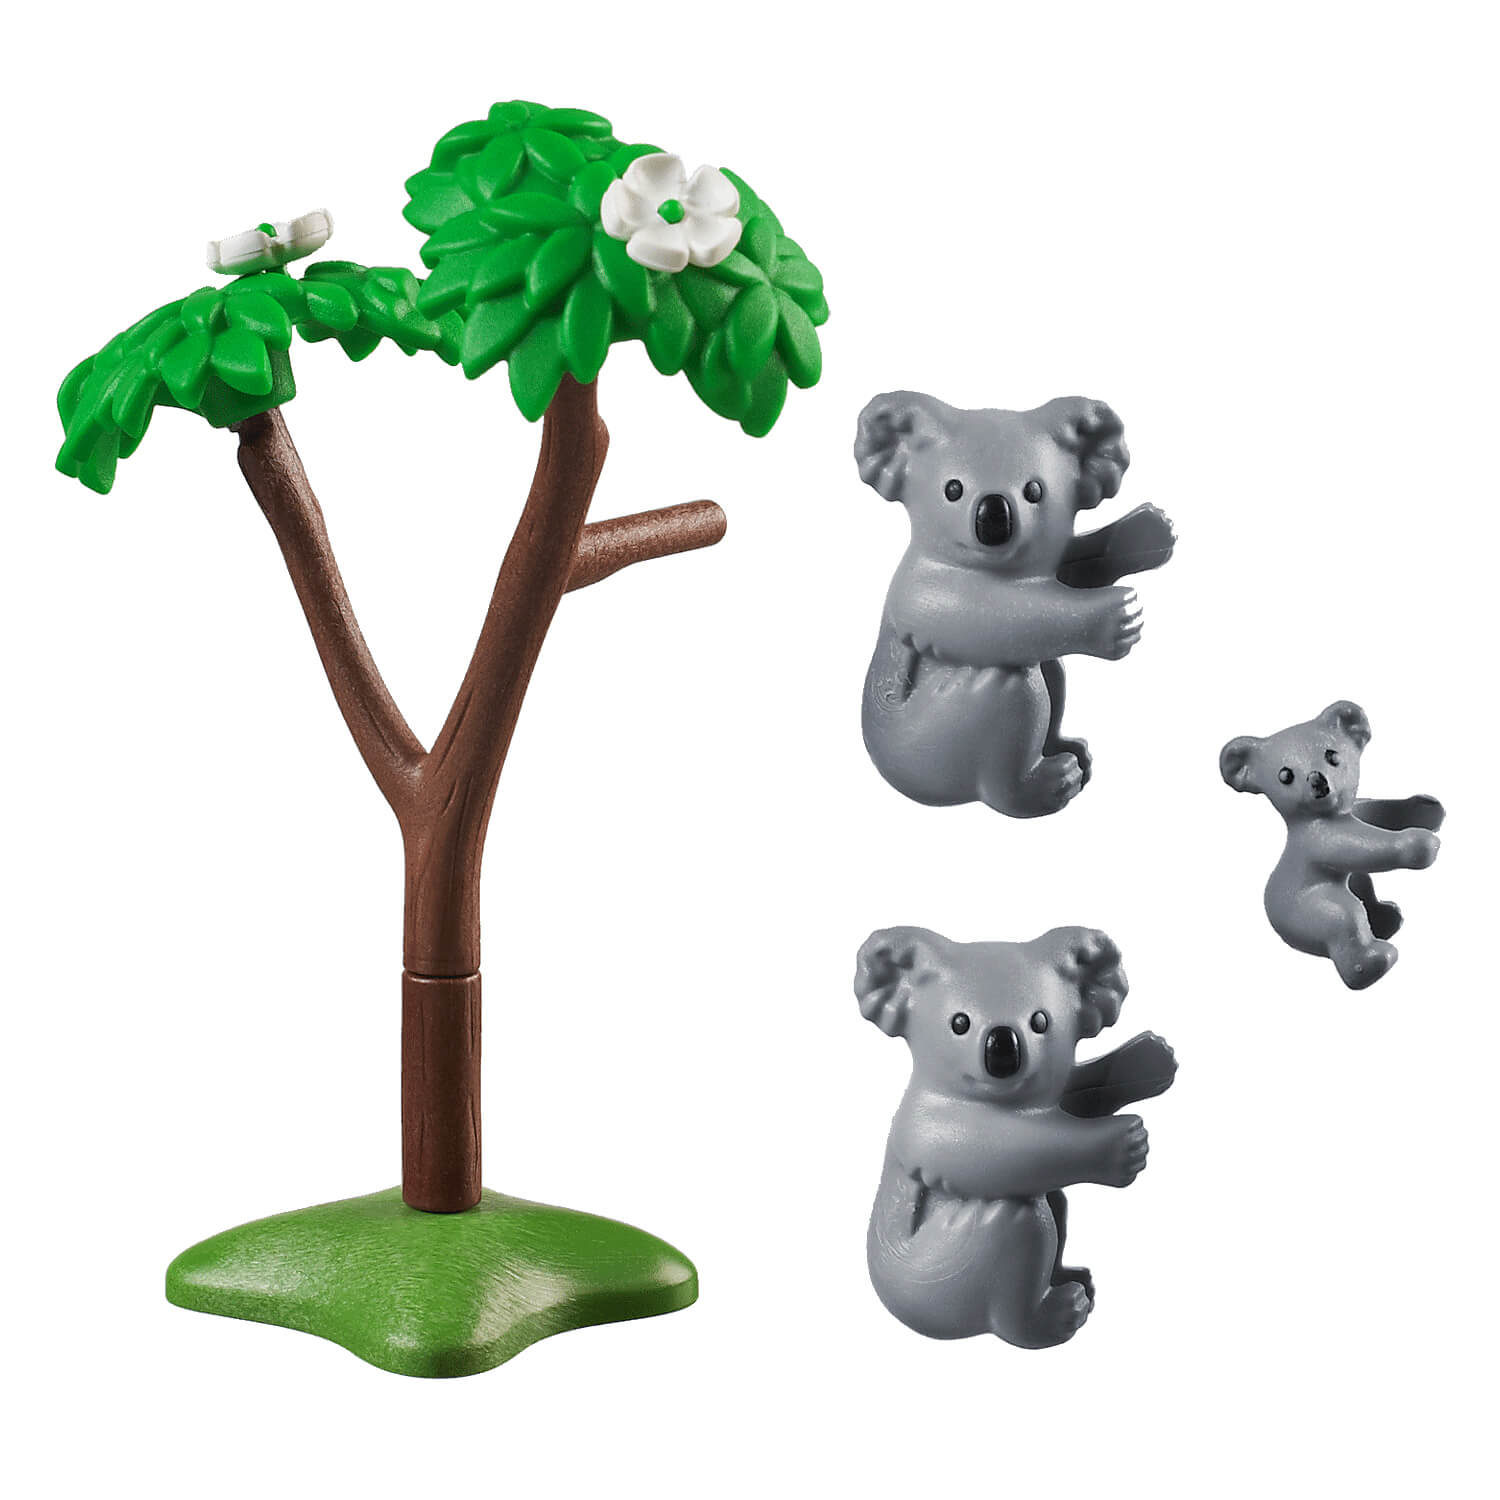 PLAYMOBIL Adventure Zoo Koalas with Baby (70352)